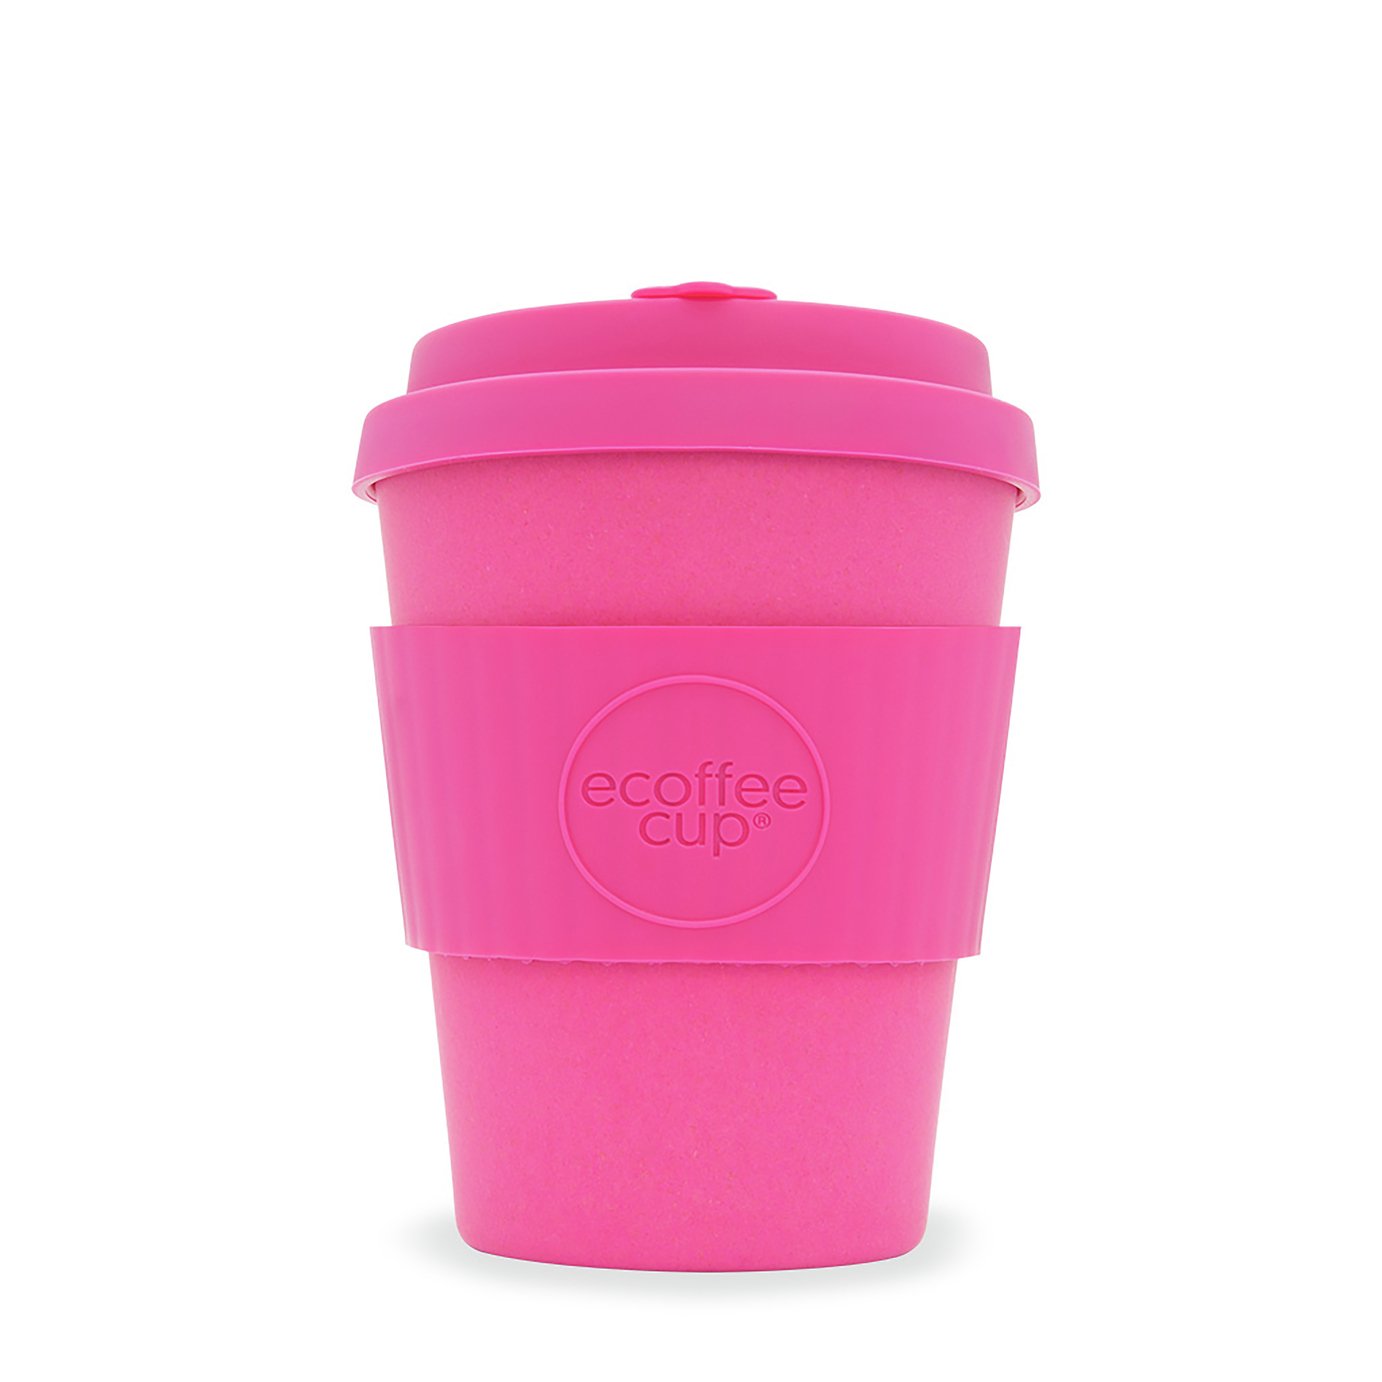 Ecoffee Cup Pink Matte Travel Mug - 340ml